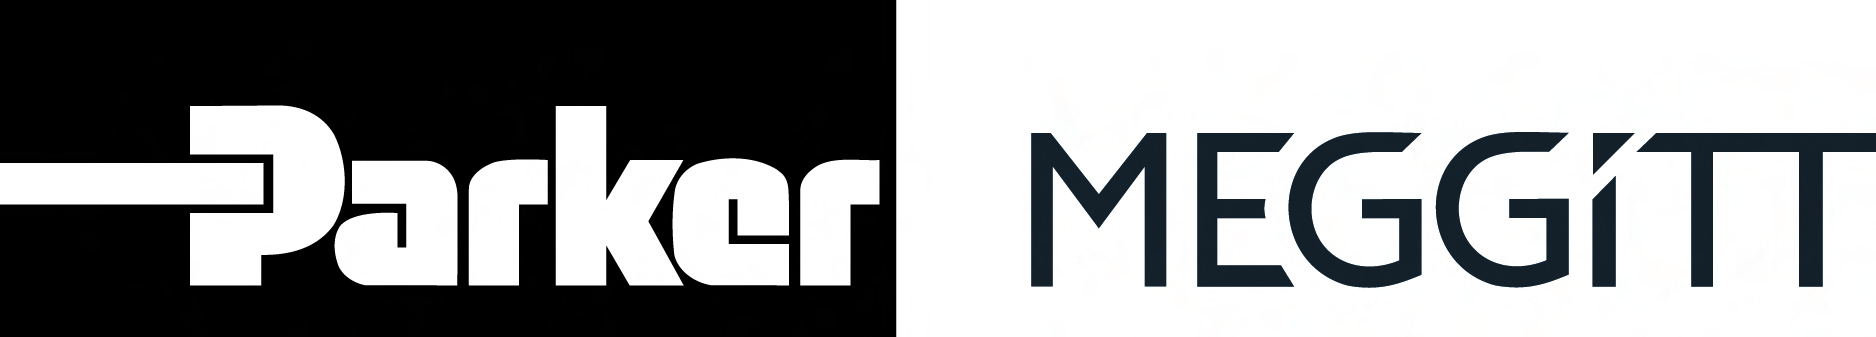 Parker_Meggitt_Transitional_Logo (1).jpg